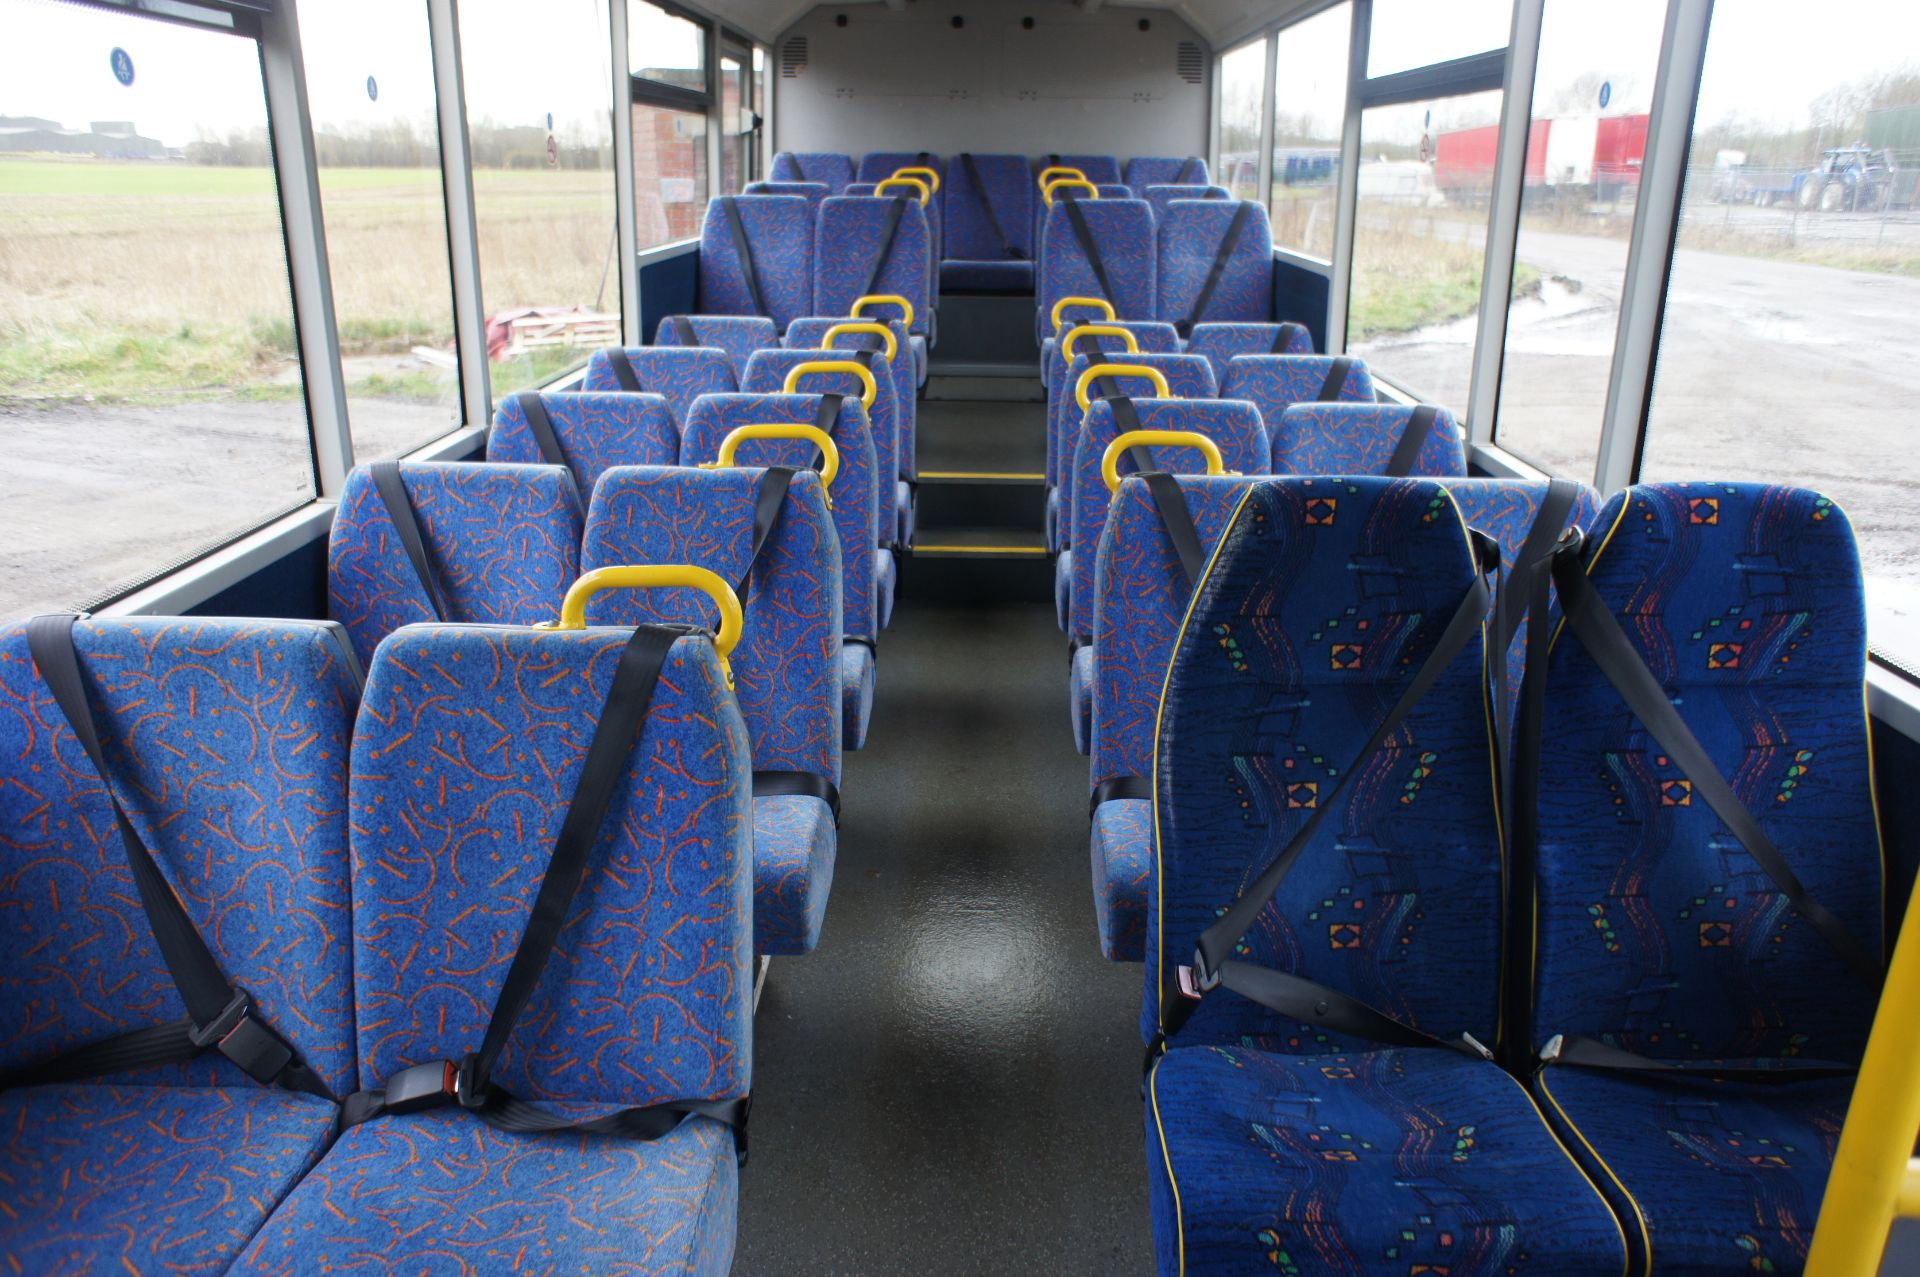 Optare Solo M920 Service Bus - Image 19 of 25